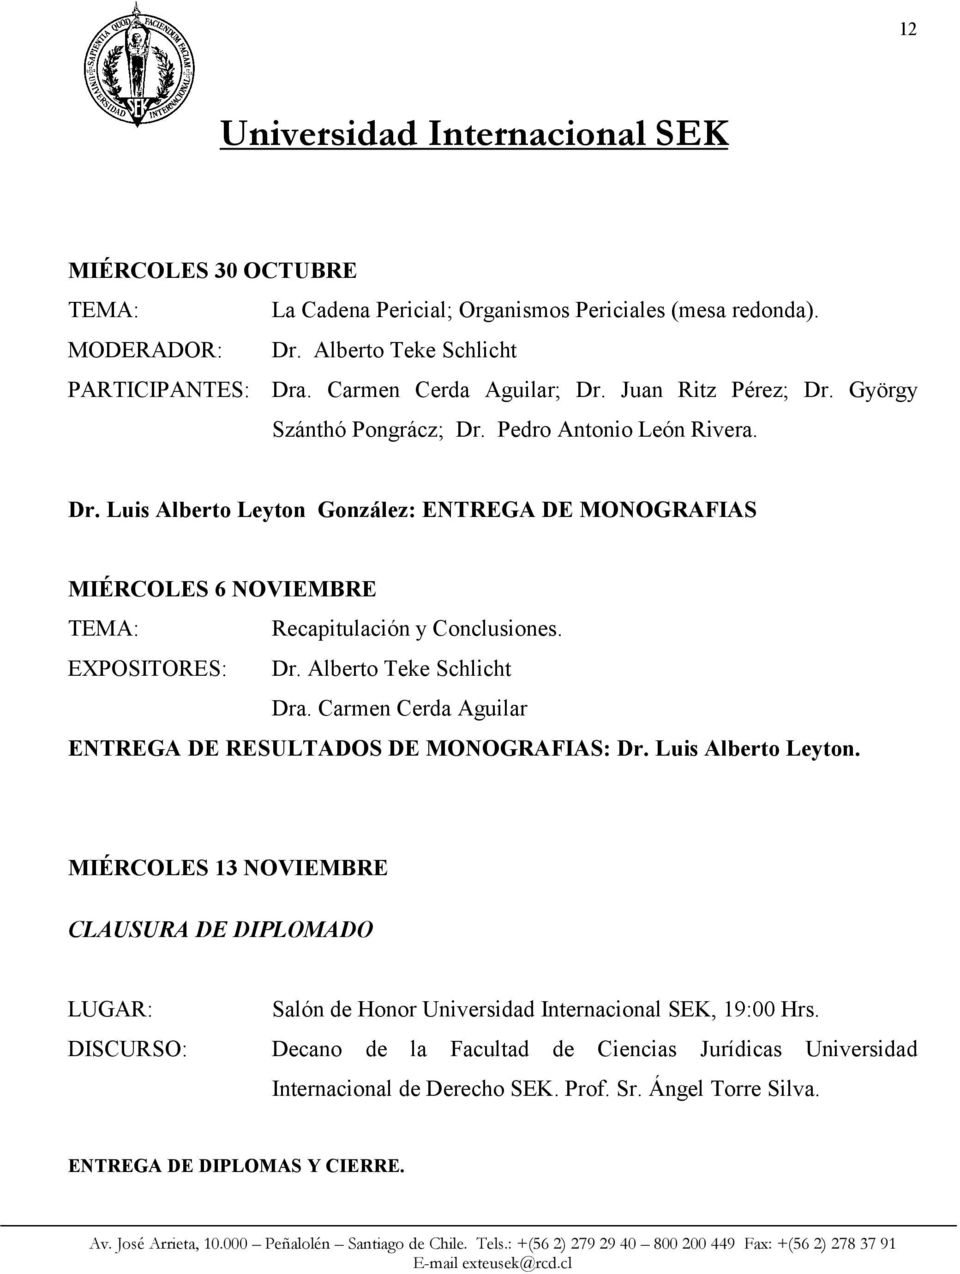 EXPOSITORES: Dr. Alberto Teke Schlicht Dra. Carmen Cerda Aguilar ENTREGA DE RESULTADOS DE MONOGRAFIAS: Dr. Luis Alberto Leyton.